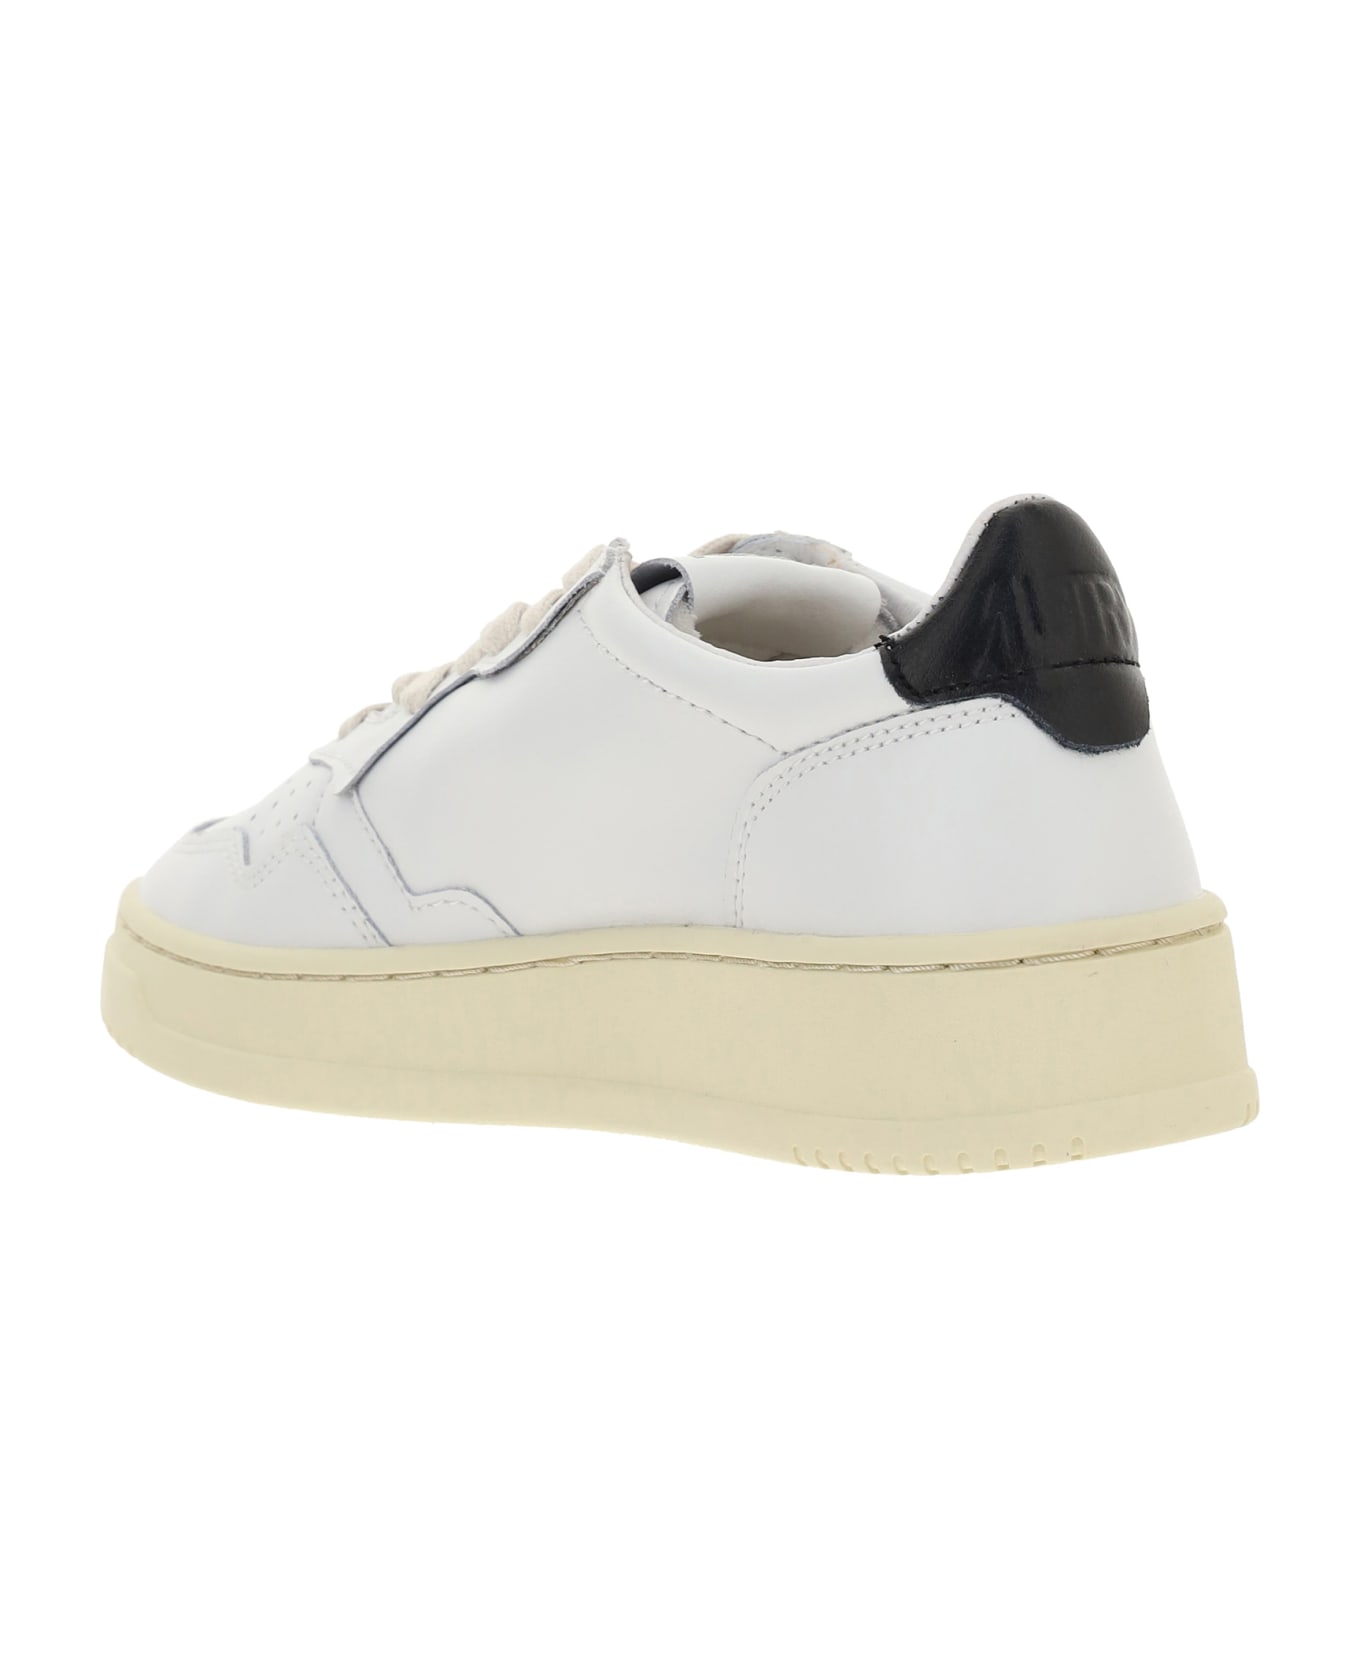 Autry Sneakers - Bianco/Nero